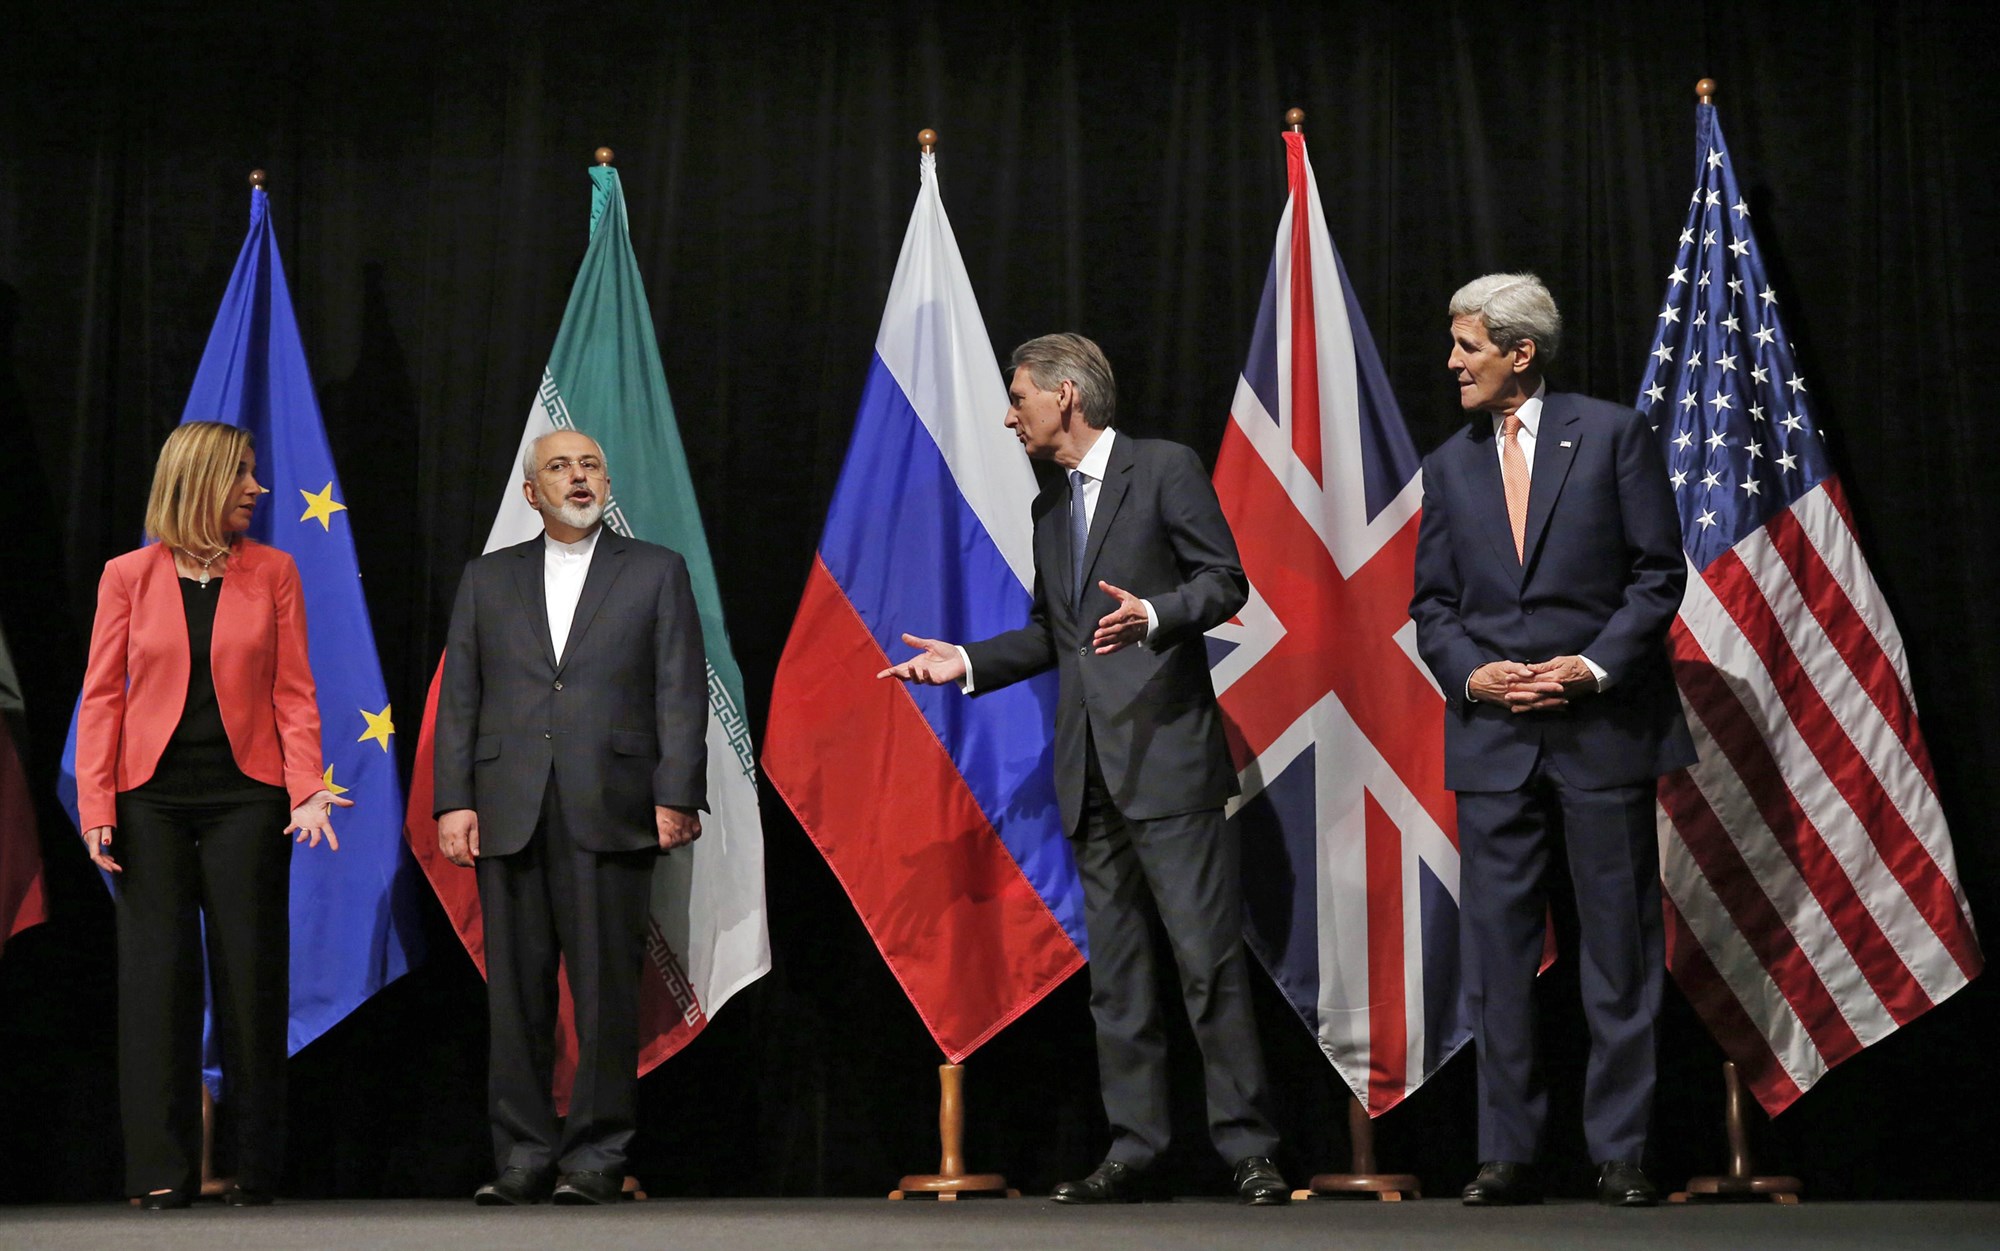 رقص دیپلماتیک تهران و واشنگتن/ آیا ایران حاضر است پیشنهاد مذاکره با آمریکا را قبول کند؟